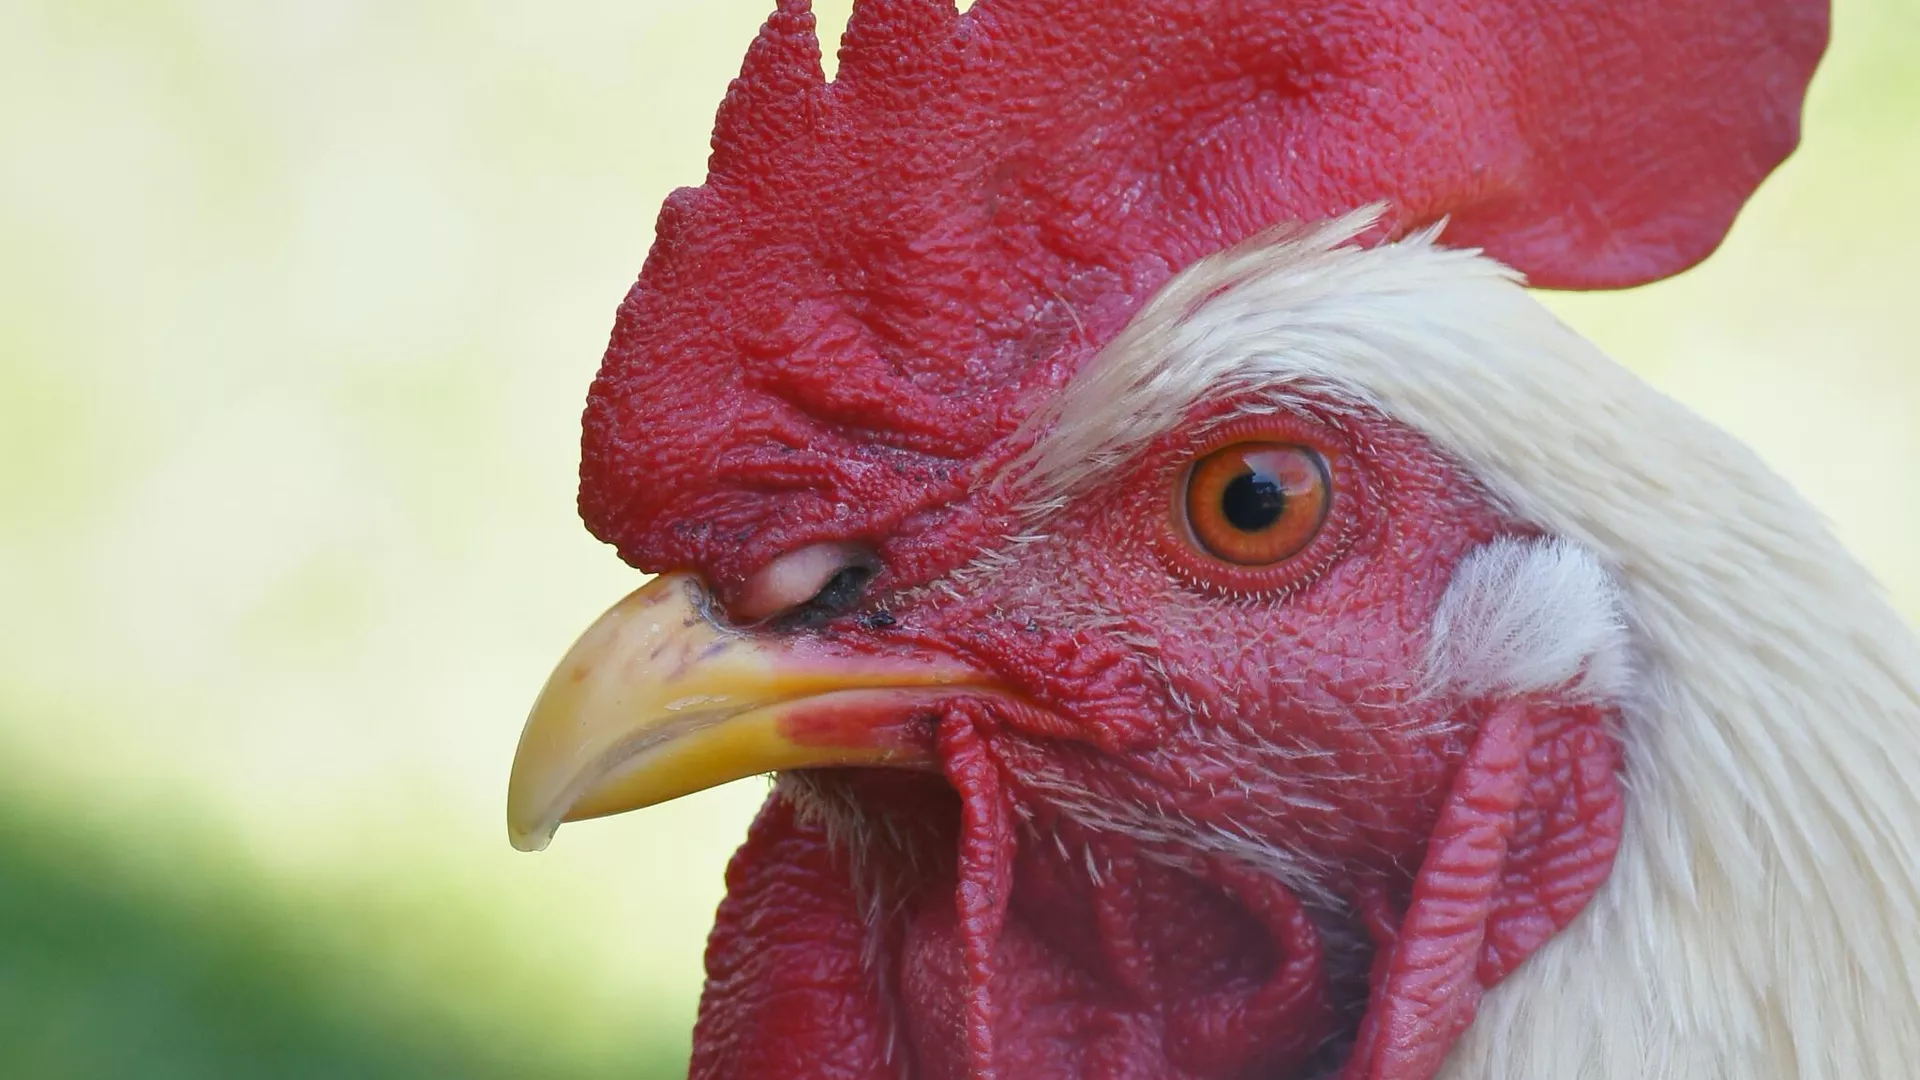  Universidad de Talca cierra temporalmente por posible brote de gripe aviar